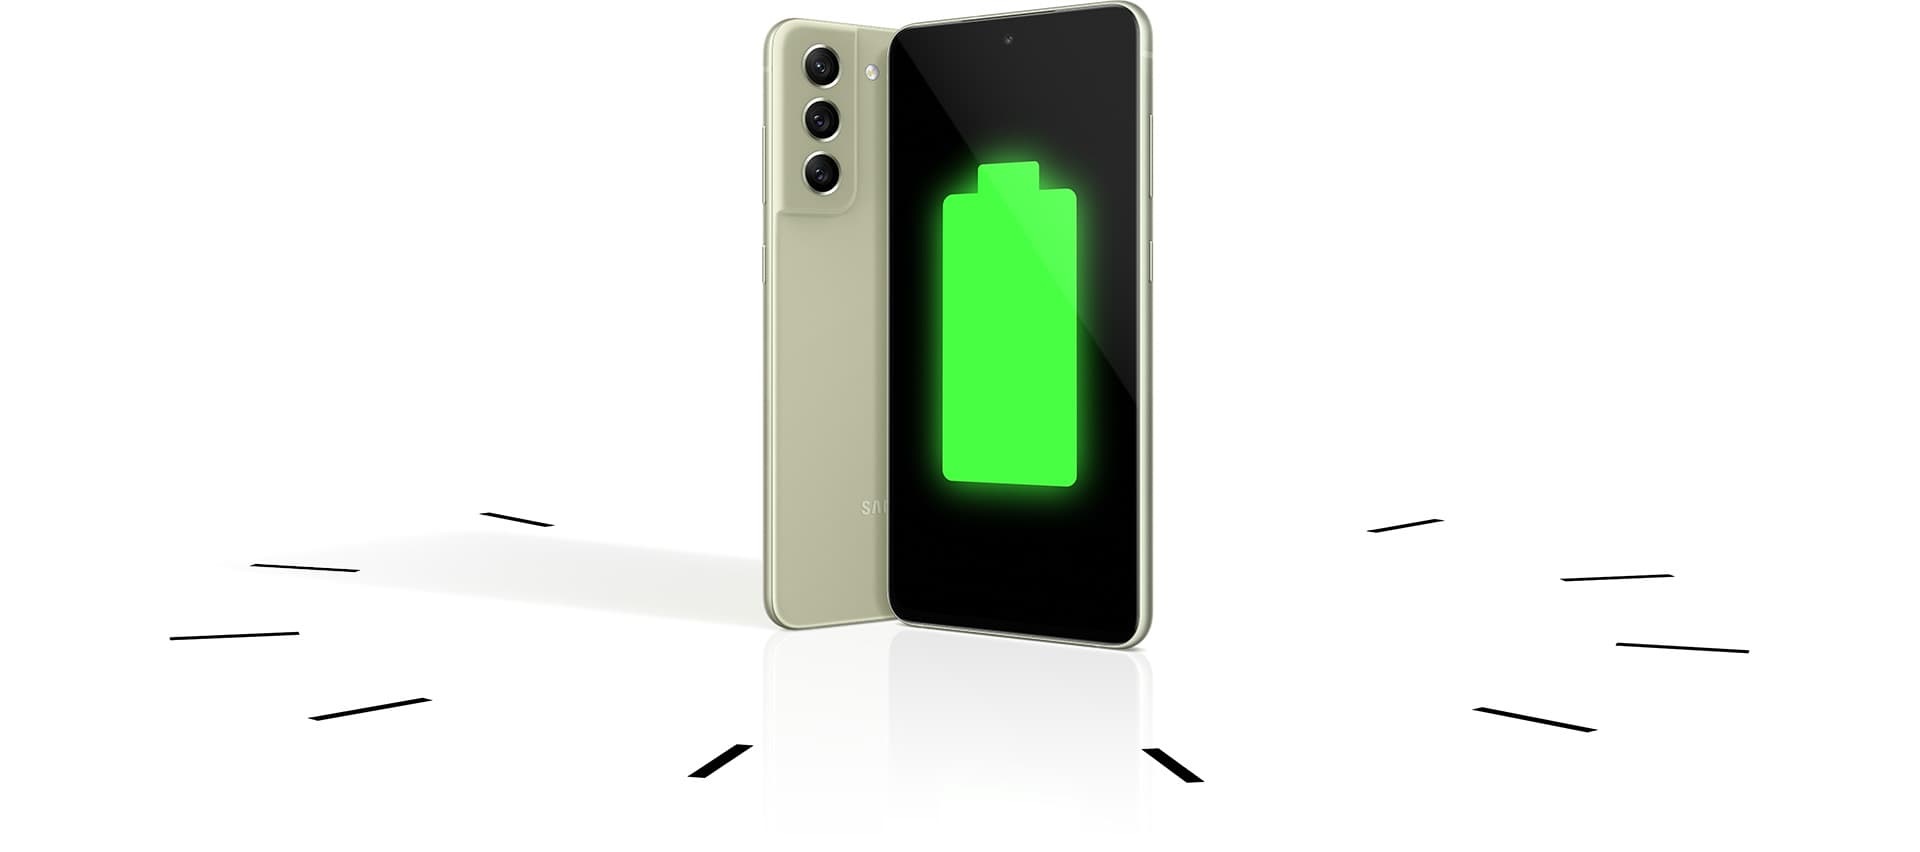 Hai chiếc điện thoại Galaxy S21 FE 5G đứng thẳng, một chiếc nhìn từ phía sau và một chiếc nhìn từ phía trước với biểu tượng pin đầy trên màn hình. Những chiếc điện thoại đứng trong một đồng hồ để chứng minh pin bền.